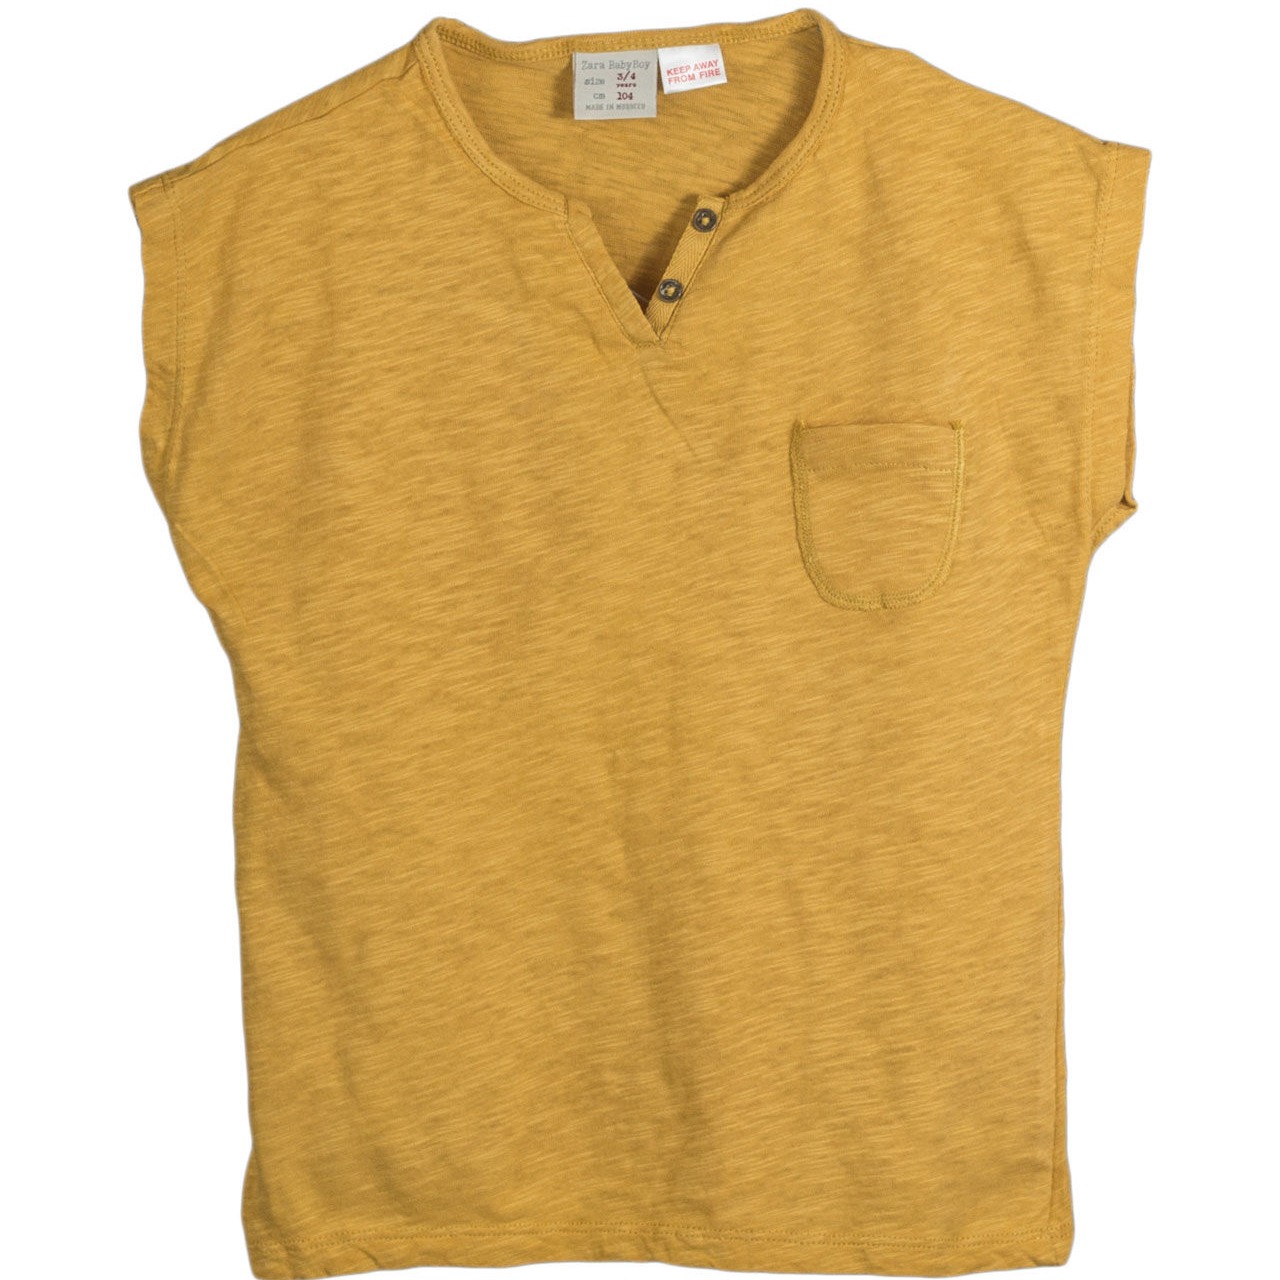 T shirt jaune moutarde face devant fond blanc